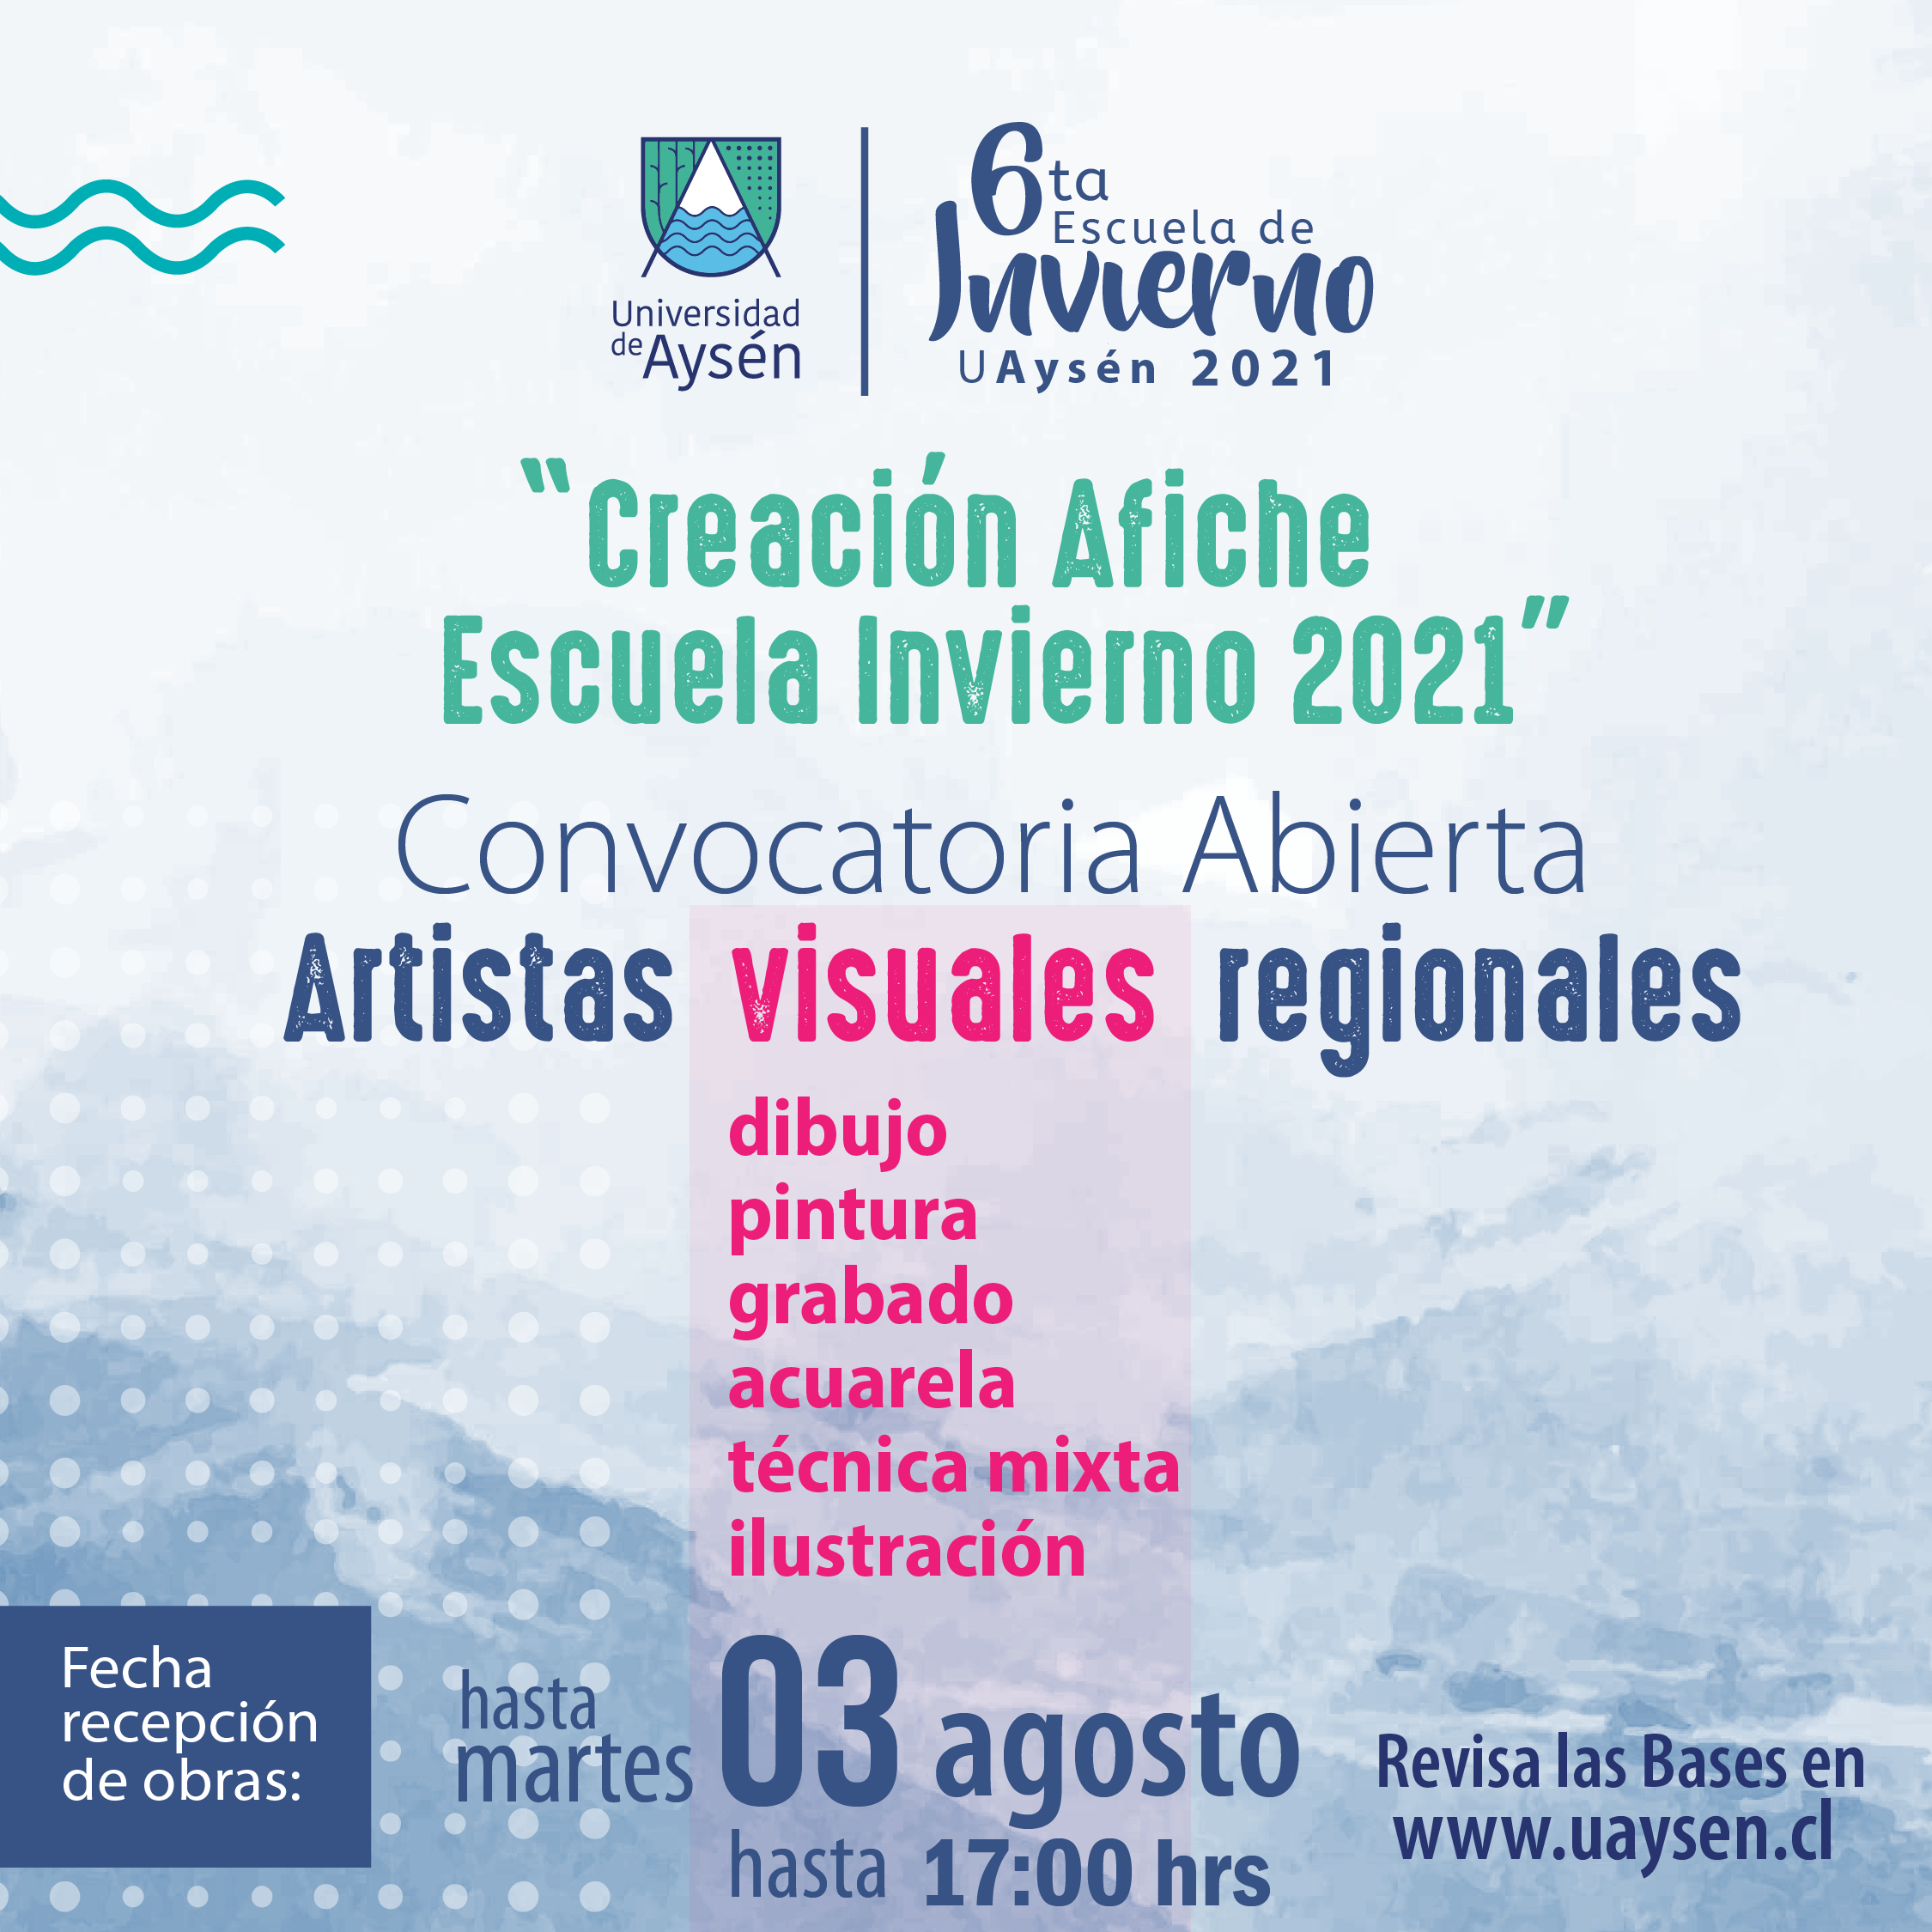 Convocatoria abierta artistas regionales creación afiche escuela de invierno 2021